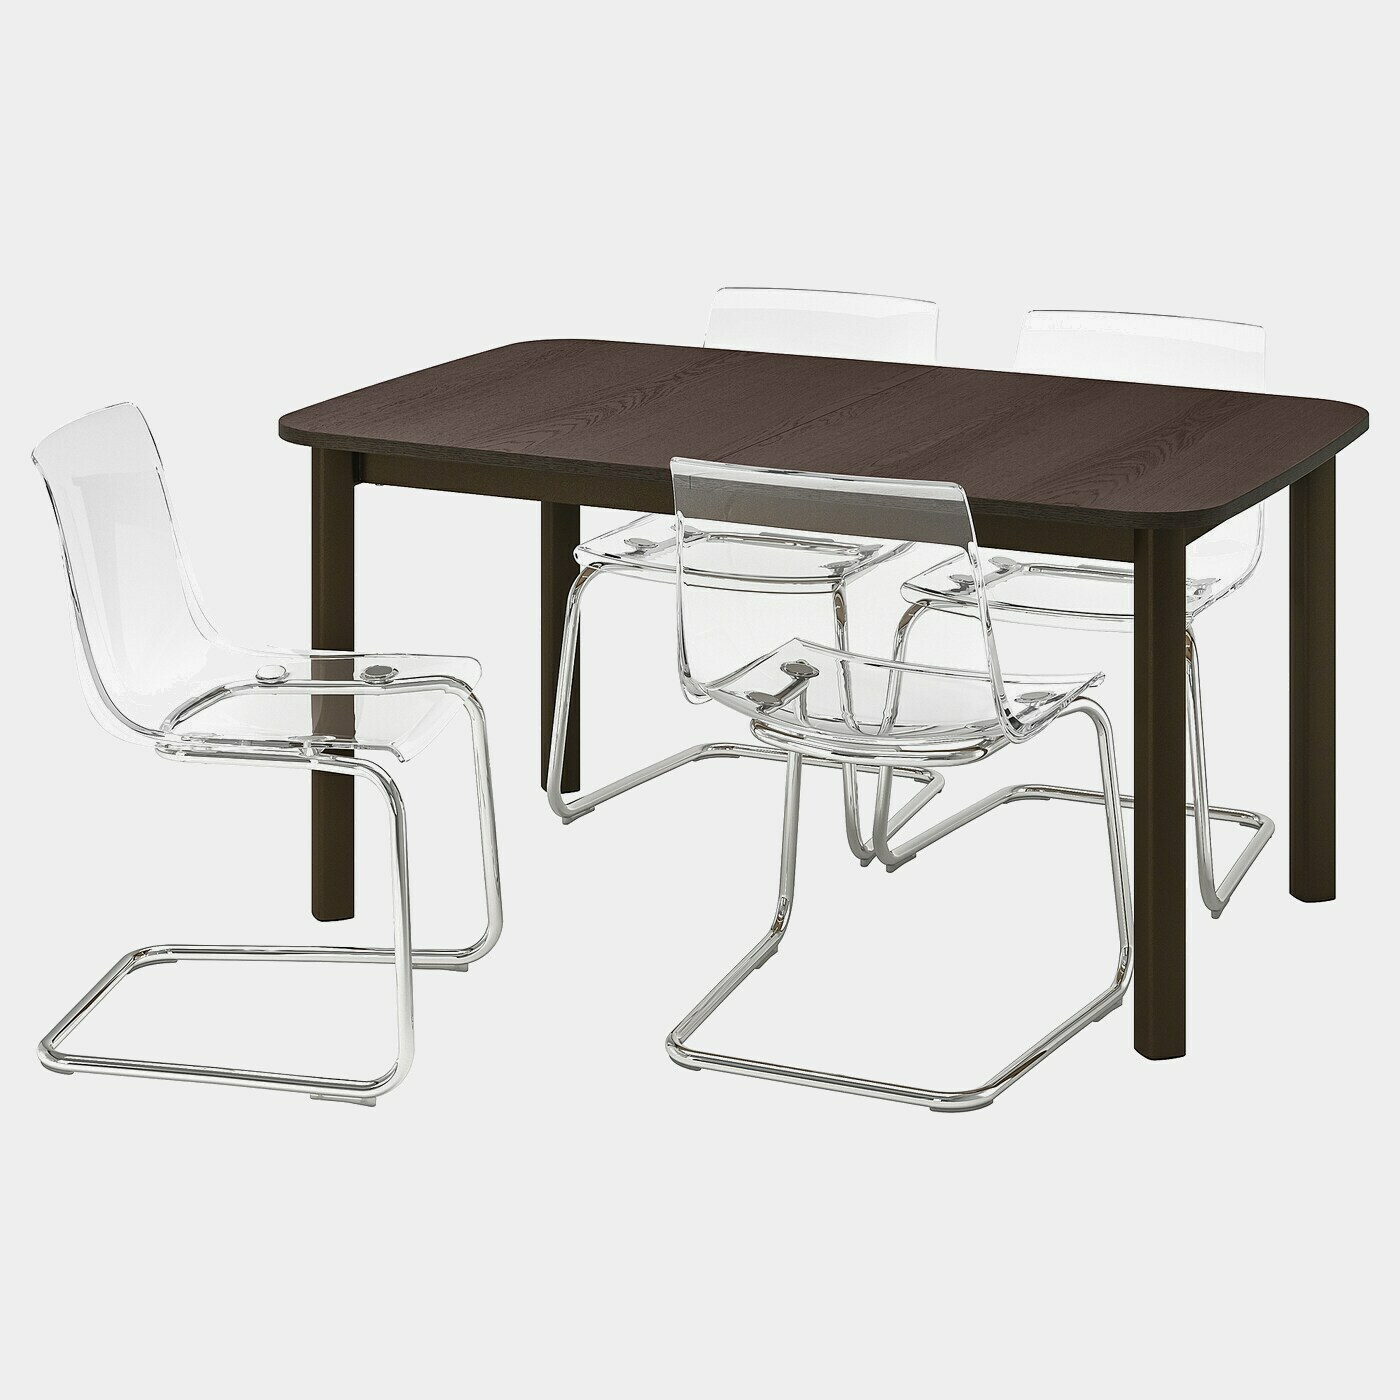 STRANDTORP / TOBIAS Tisch und 4 Stühle  -  - Möbel Ideen für dein Zuhause von Home Trends. Möbel Trends von Social Media Influencer für dein Skandi Zuhause.